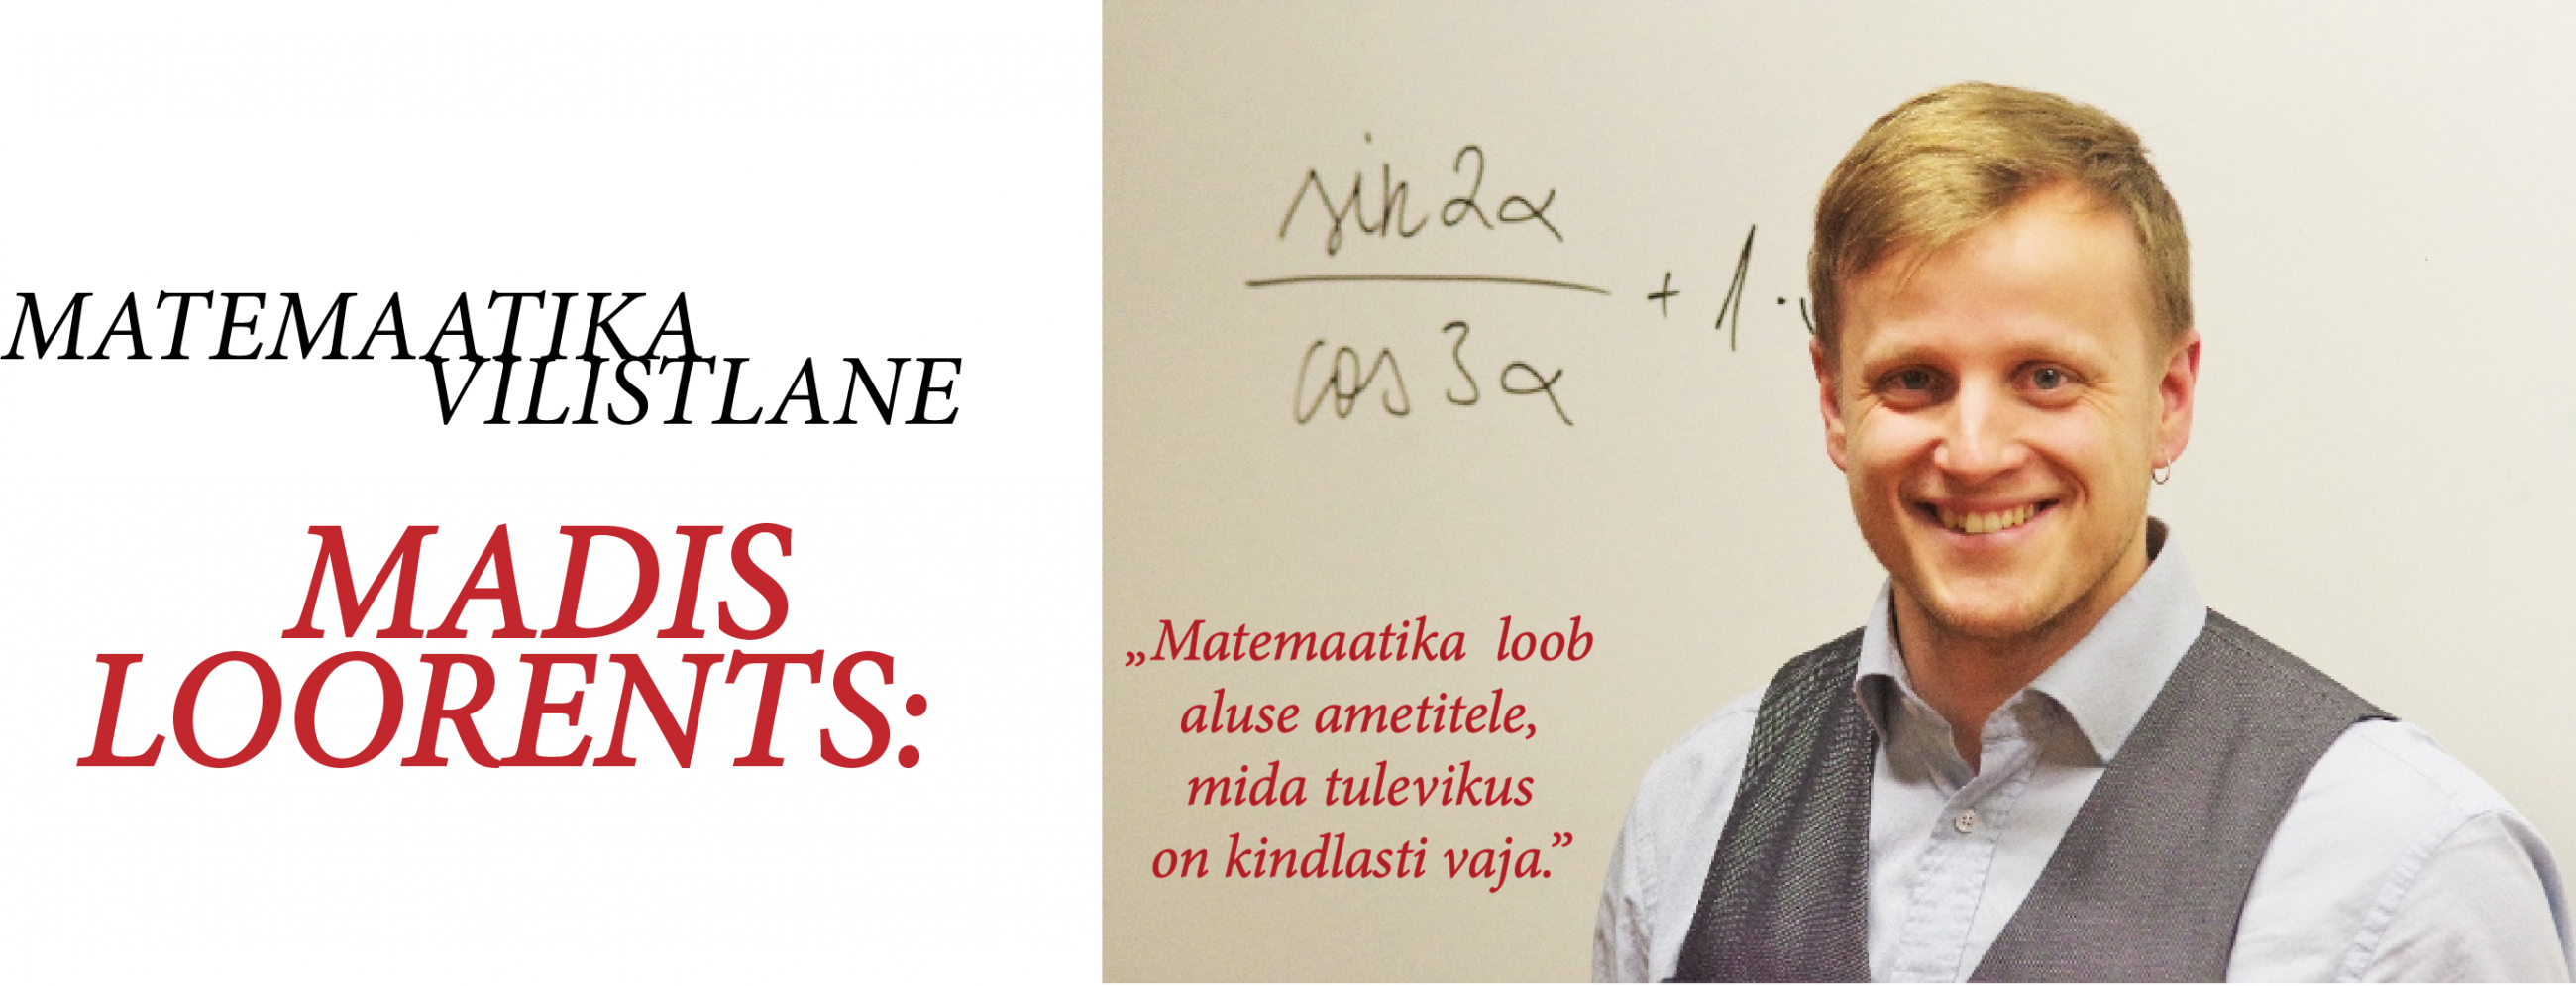 matemaatika vilistlane Madis Loorents